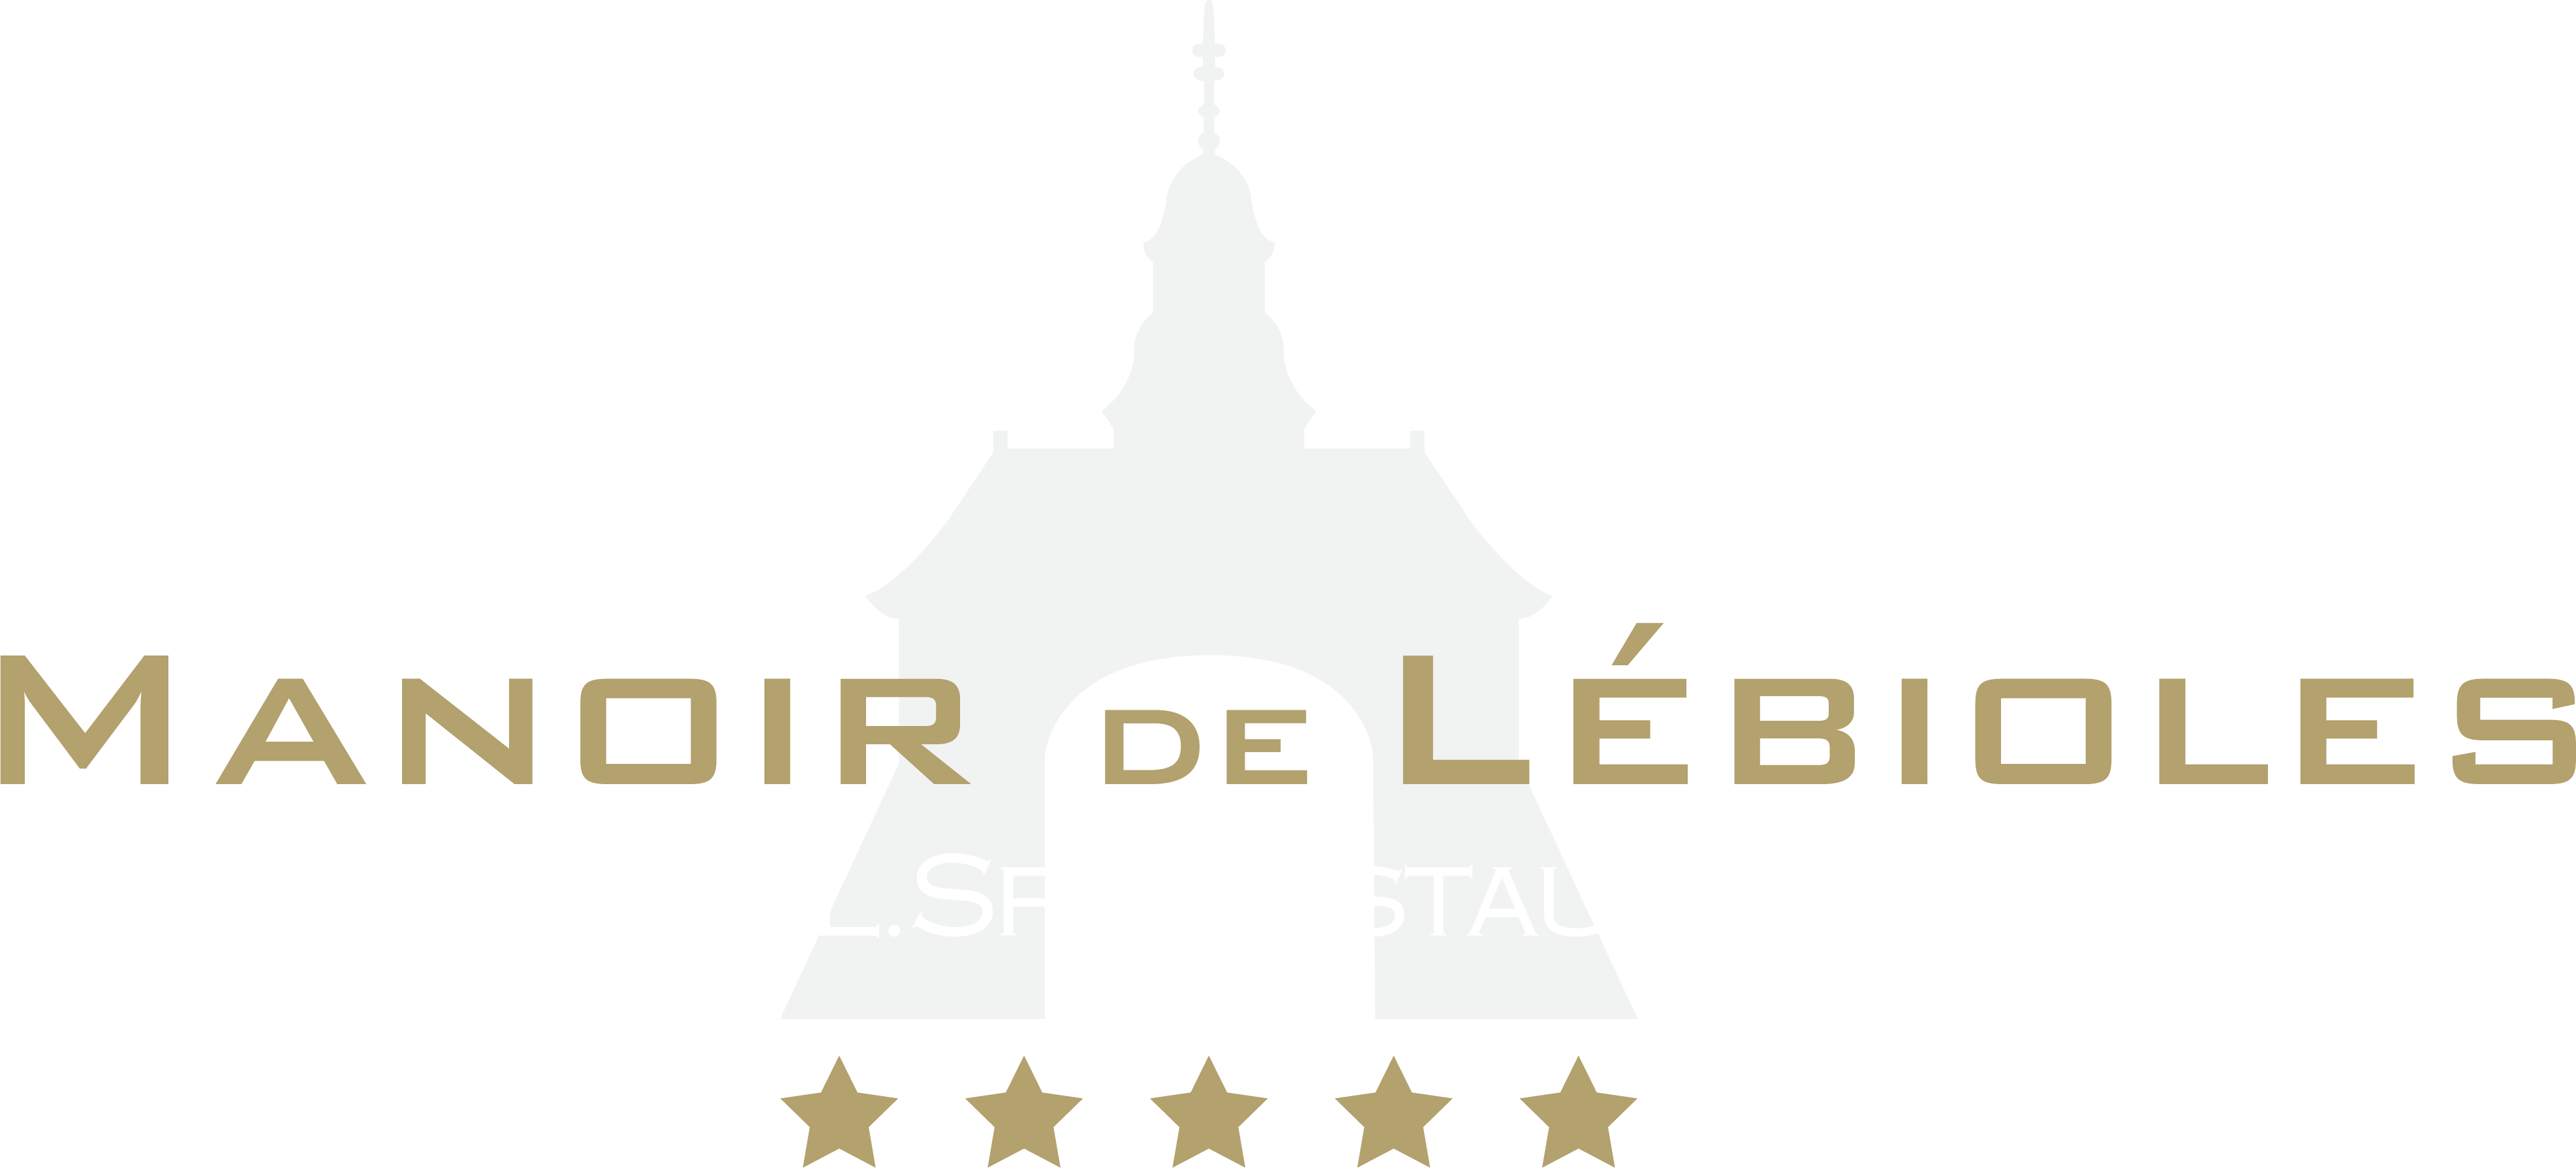 Hôtel / Restaurant / Espace bien-être